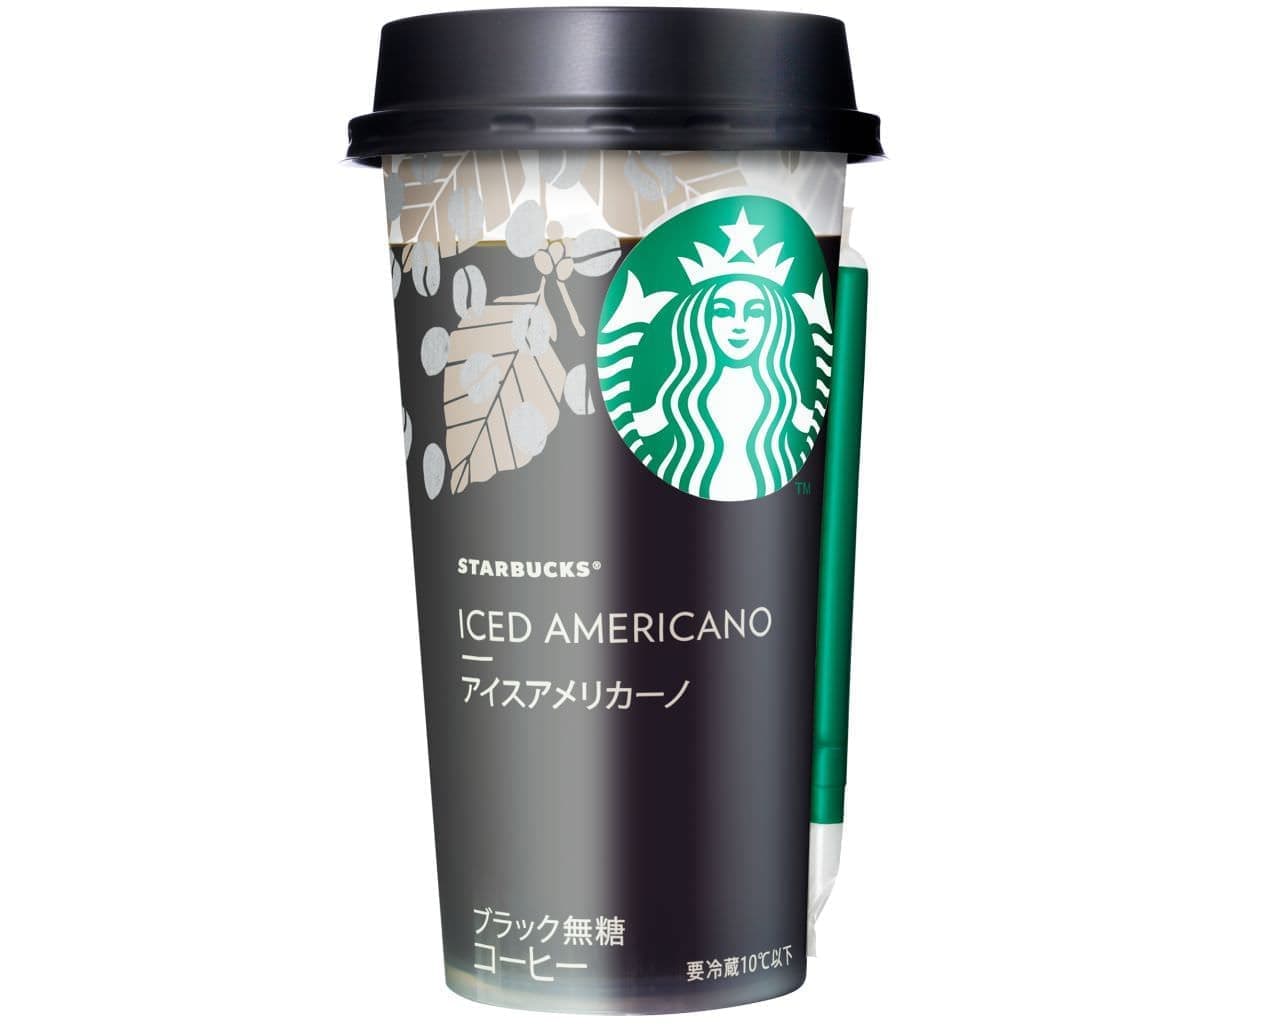 Starbucks "Starbucks Ice Americano"